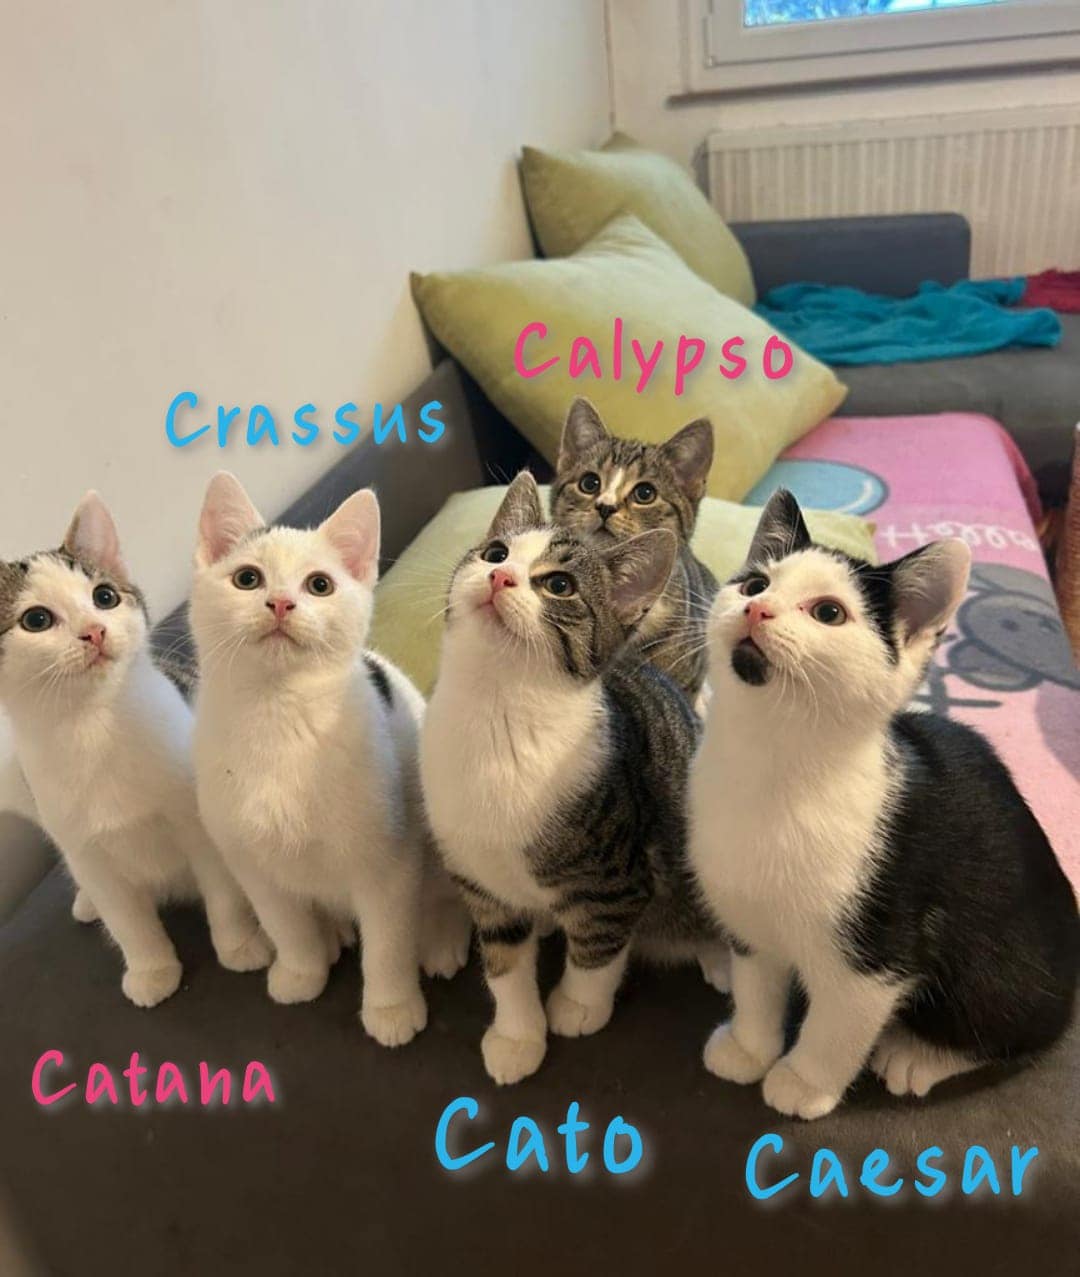 Cato, Caesar, Catana, Crassus und Calypso